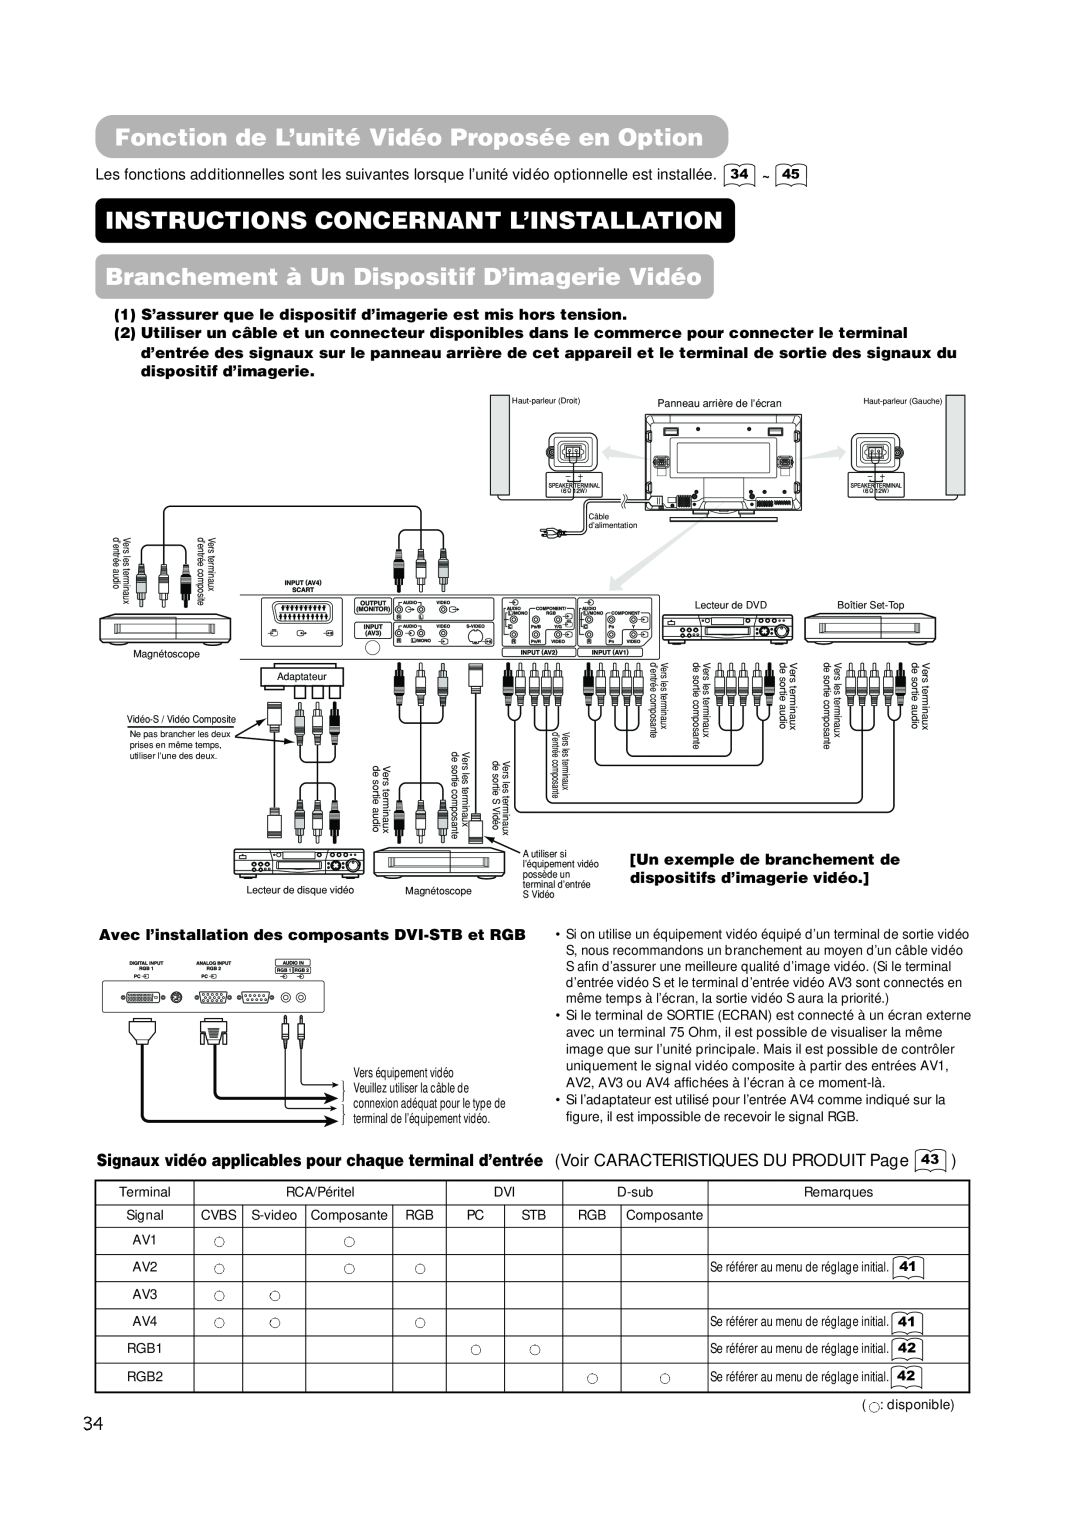 Hitachi PW1A user manual Fonction de L’unité Vidéo Proposée en Option, Instructions Concernant L’Installation 